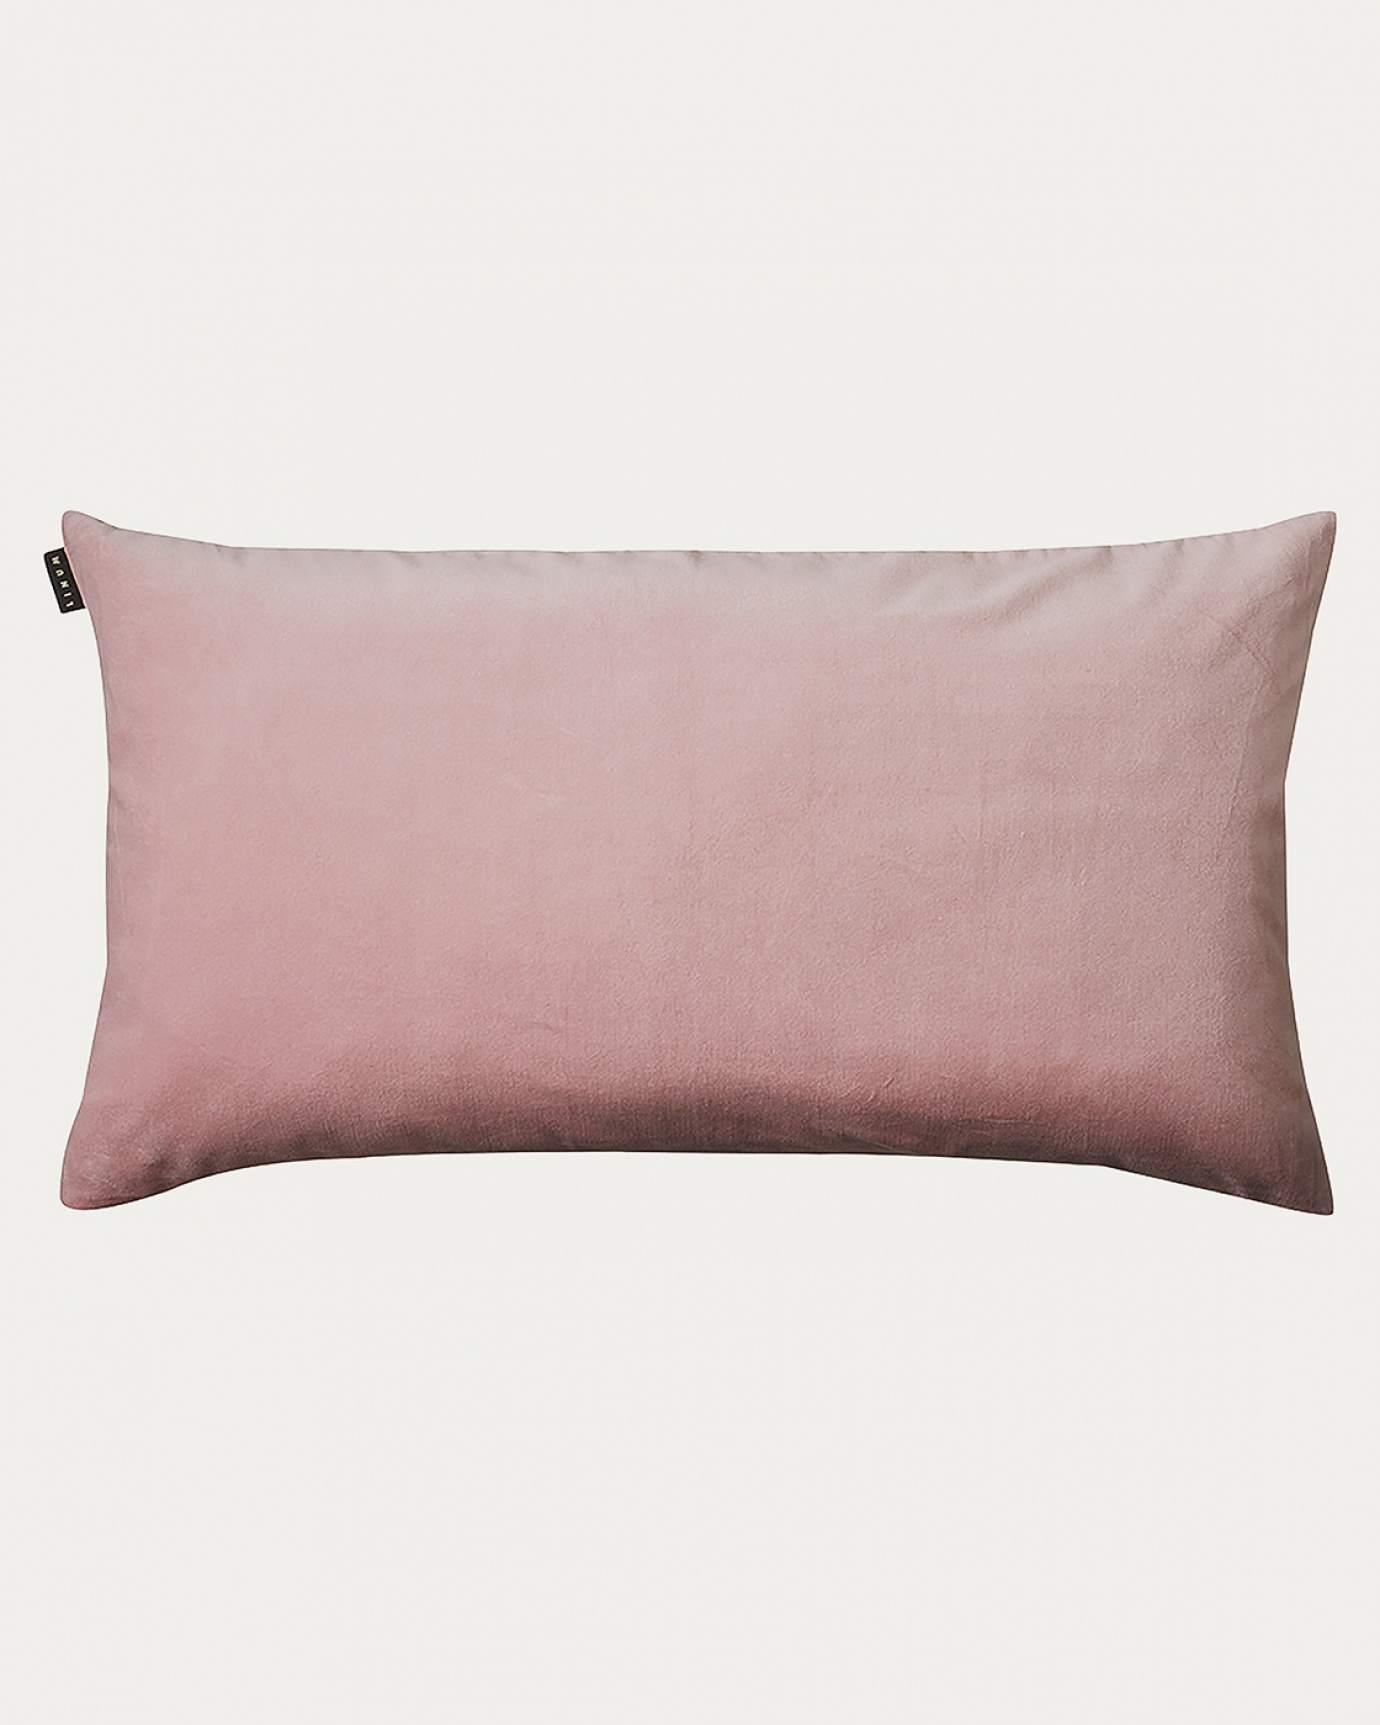 Immagine prodotto rosa antico PAOLO copricuscini in morbido velluto di cotone di LINUM DESIGN. Dimensioni 50x90 cm.